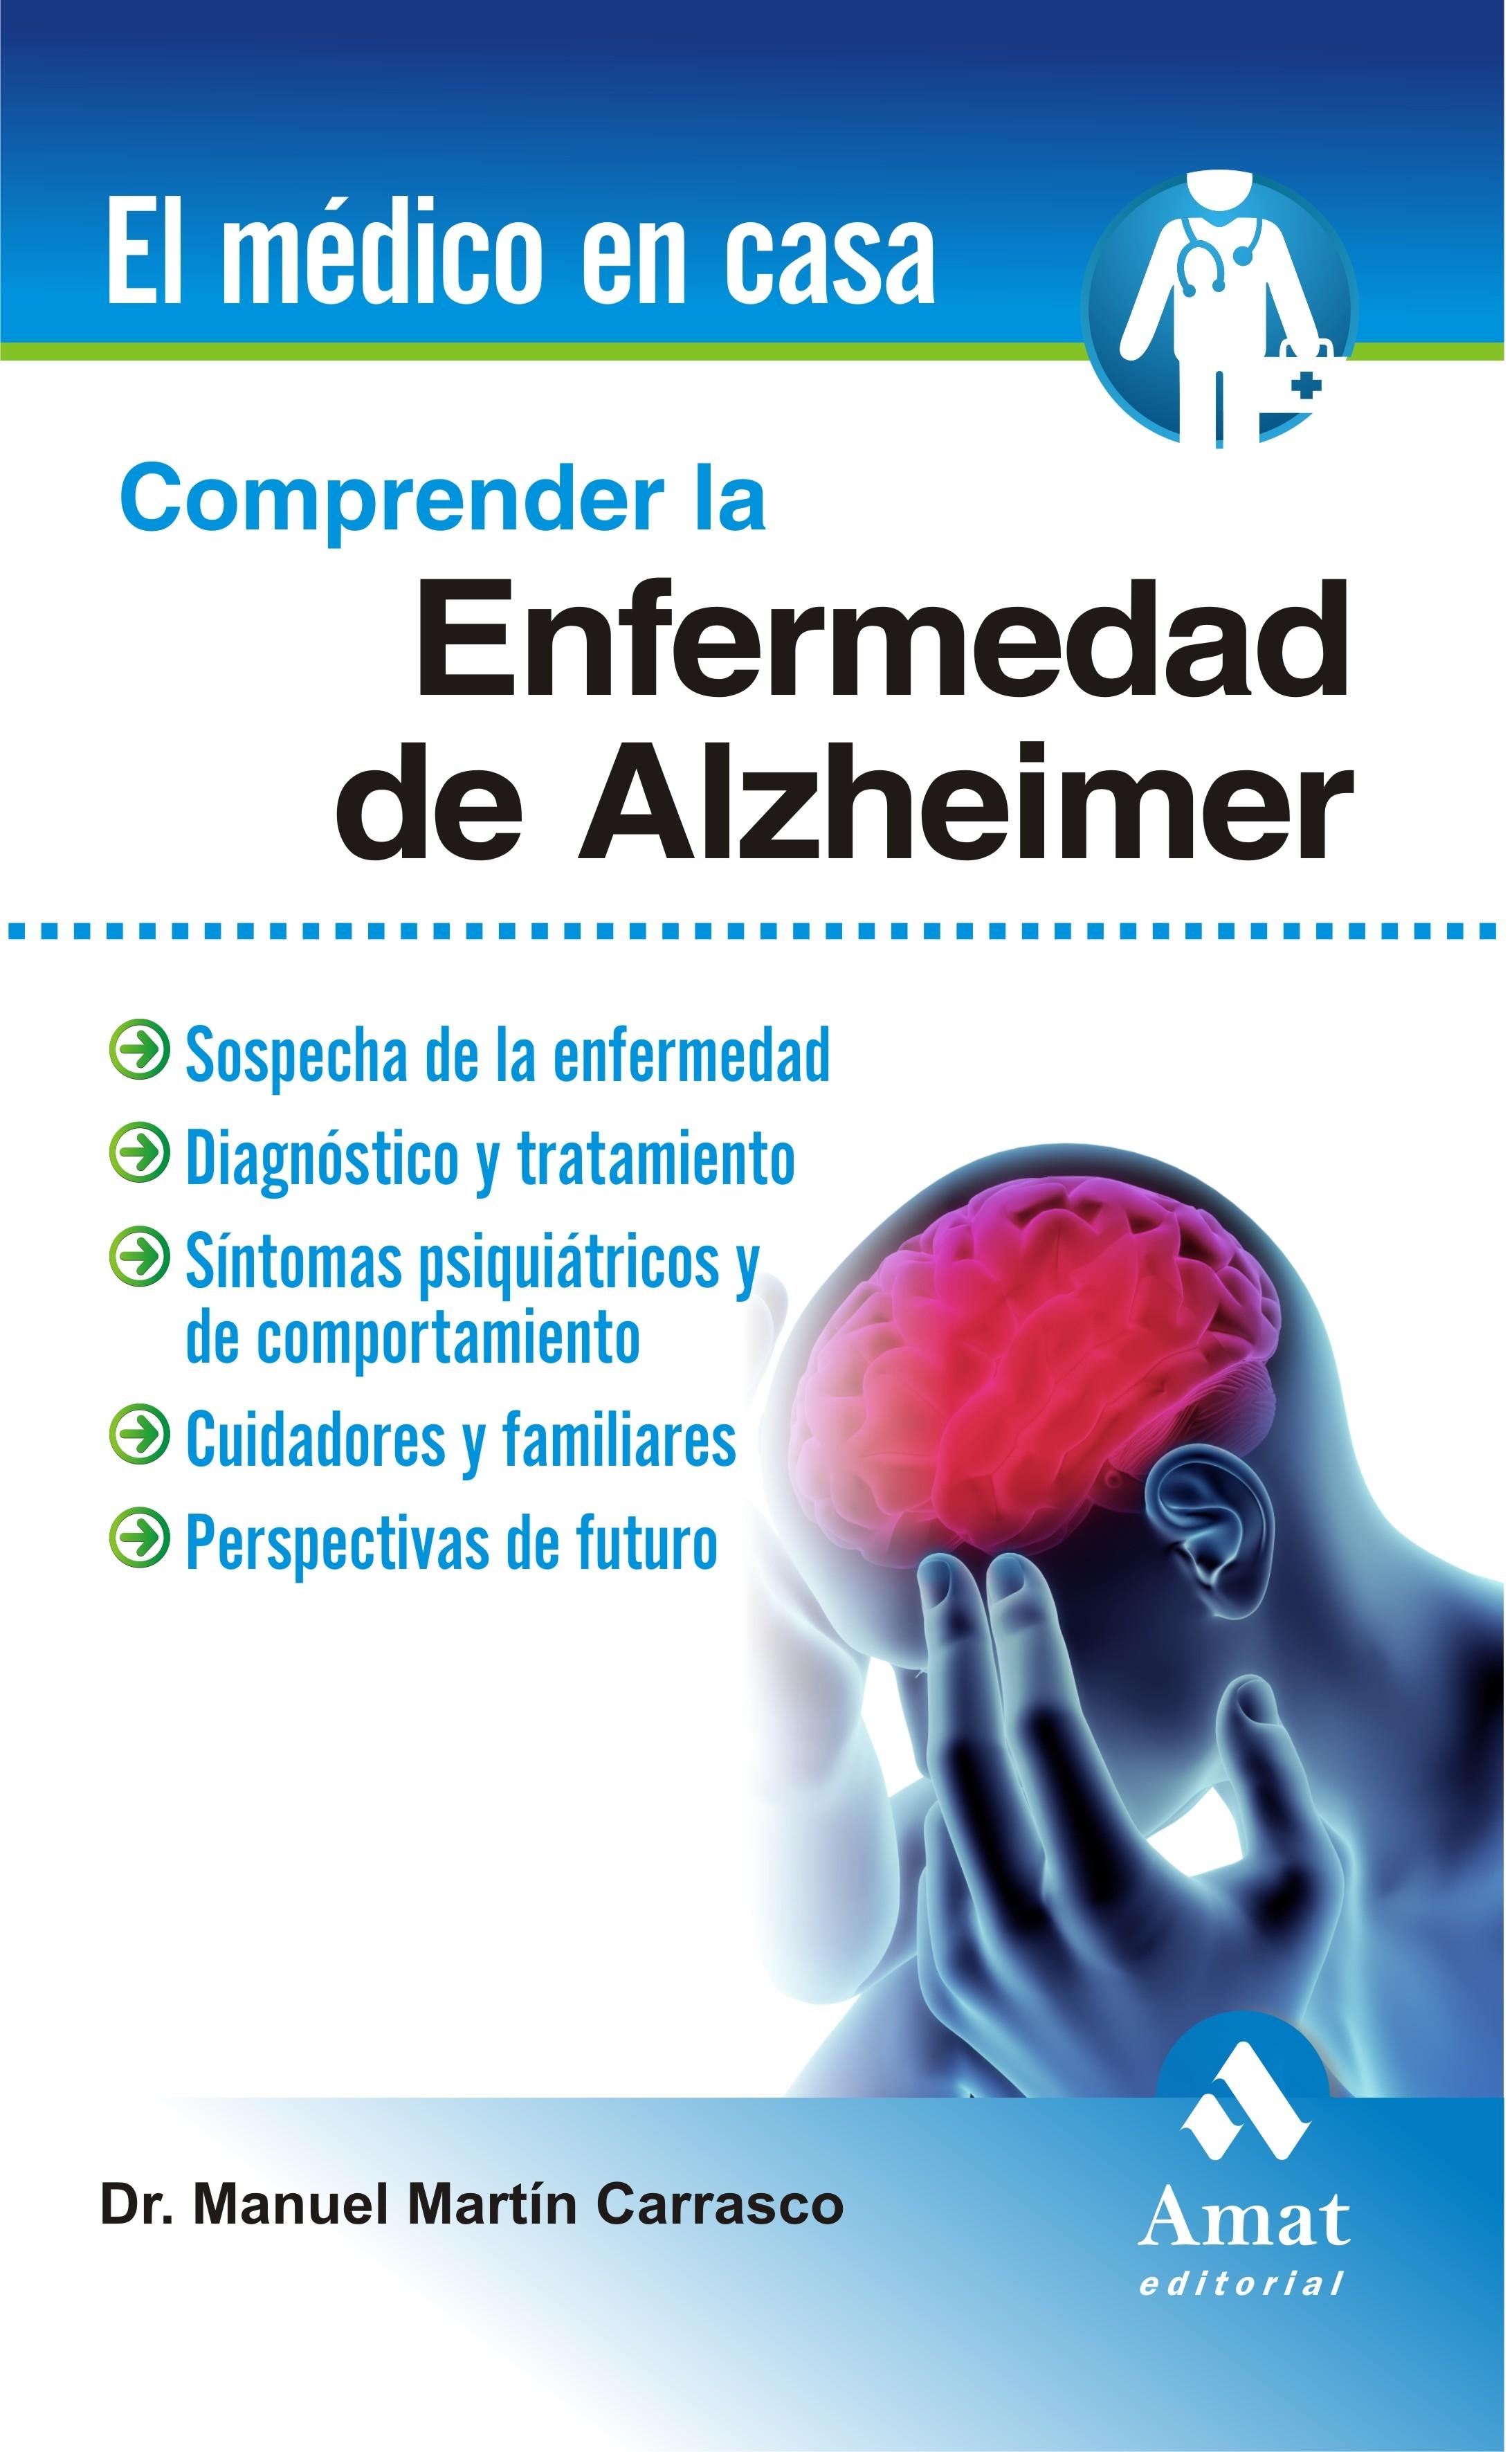 Comprender la Enfermedad del Alzheimer "Sospecha de la Enfermedad, Diagnóstica y Tratamiento"